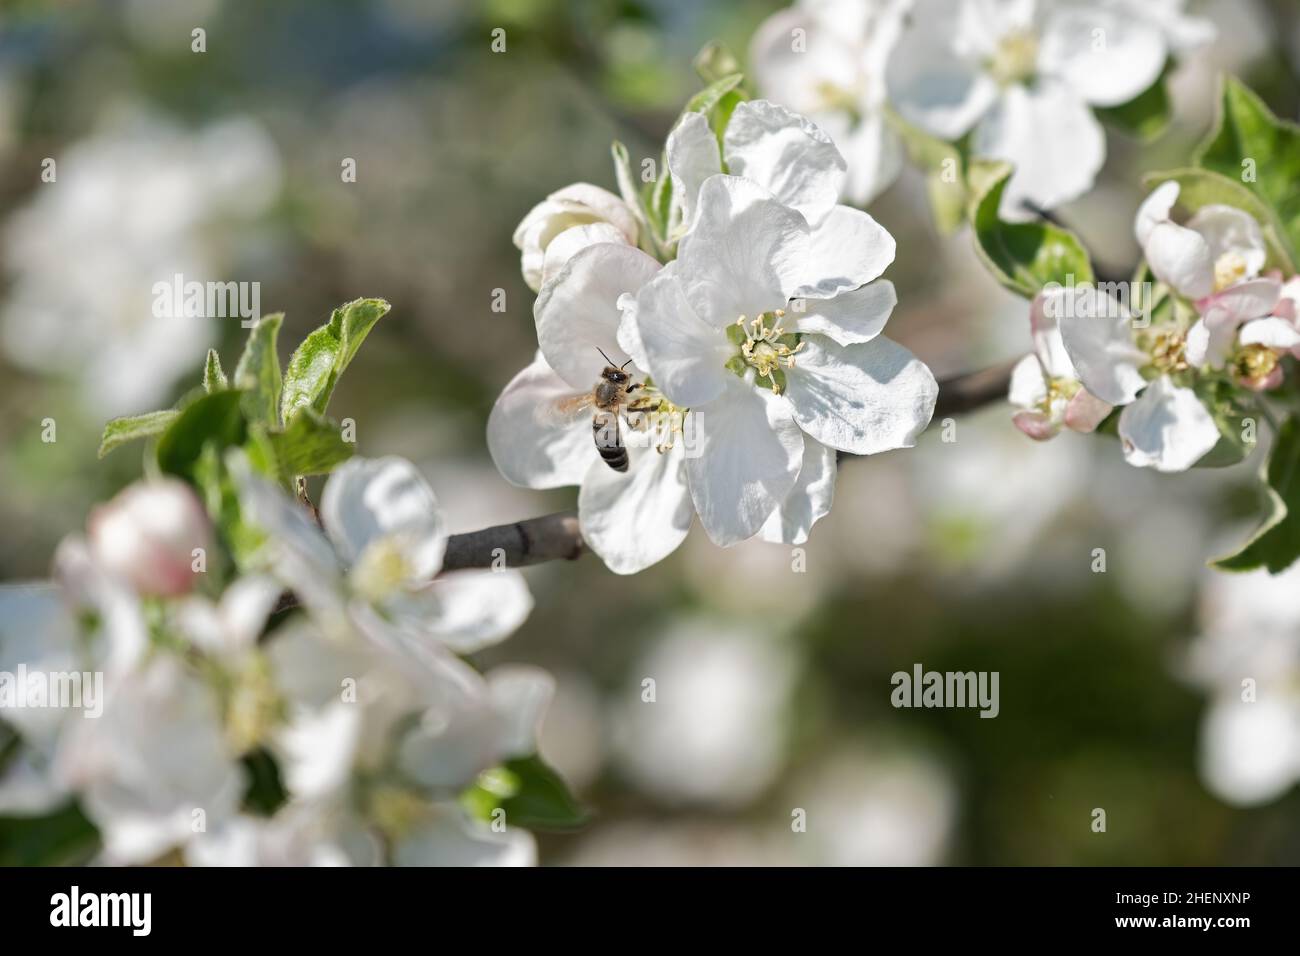 gros plan de fleurs blanches sur arbre fruitier avec abeille Banque D'Images